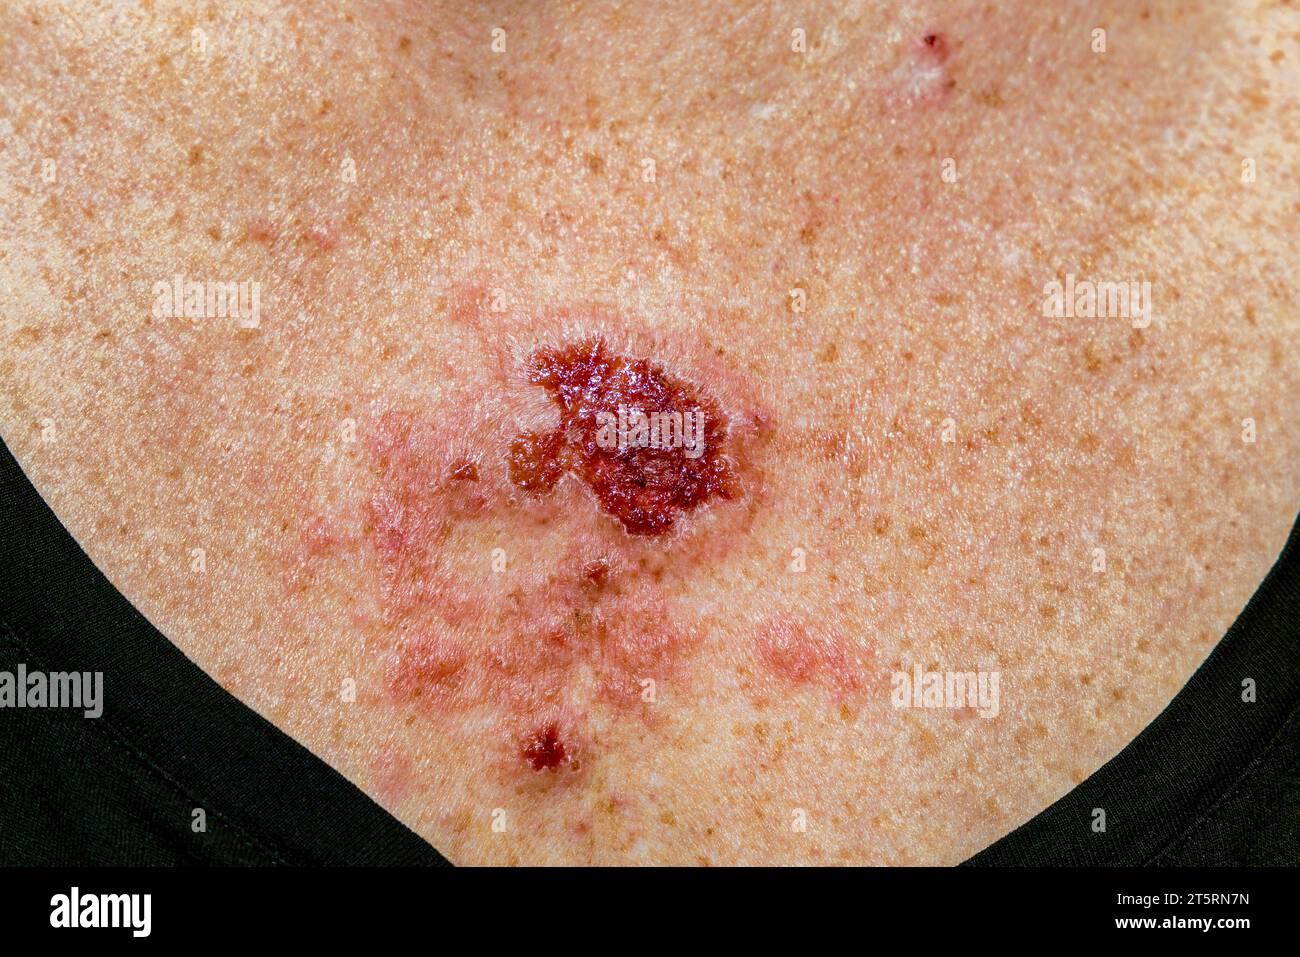 Carcinome basocellulaire superficiel réagissant à la crème imiquimod après un traitement cohérent montrant une lésion rouge sur thorax femme caucasienne de 30 s. Banque D'Images